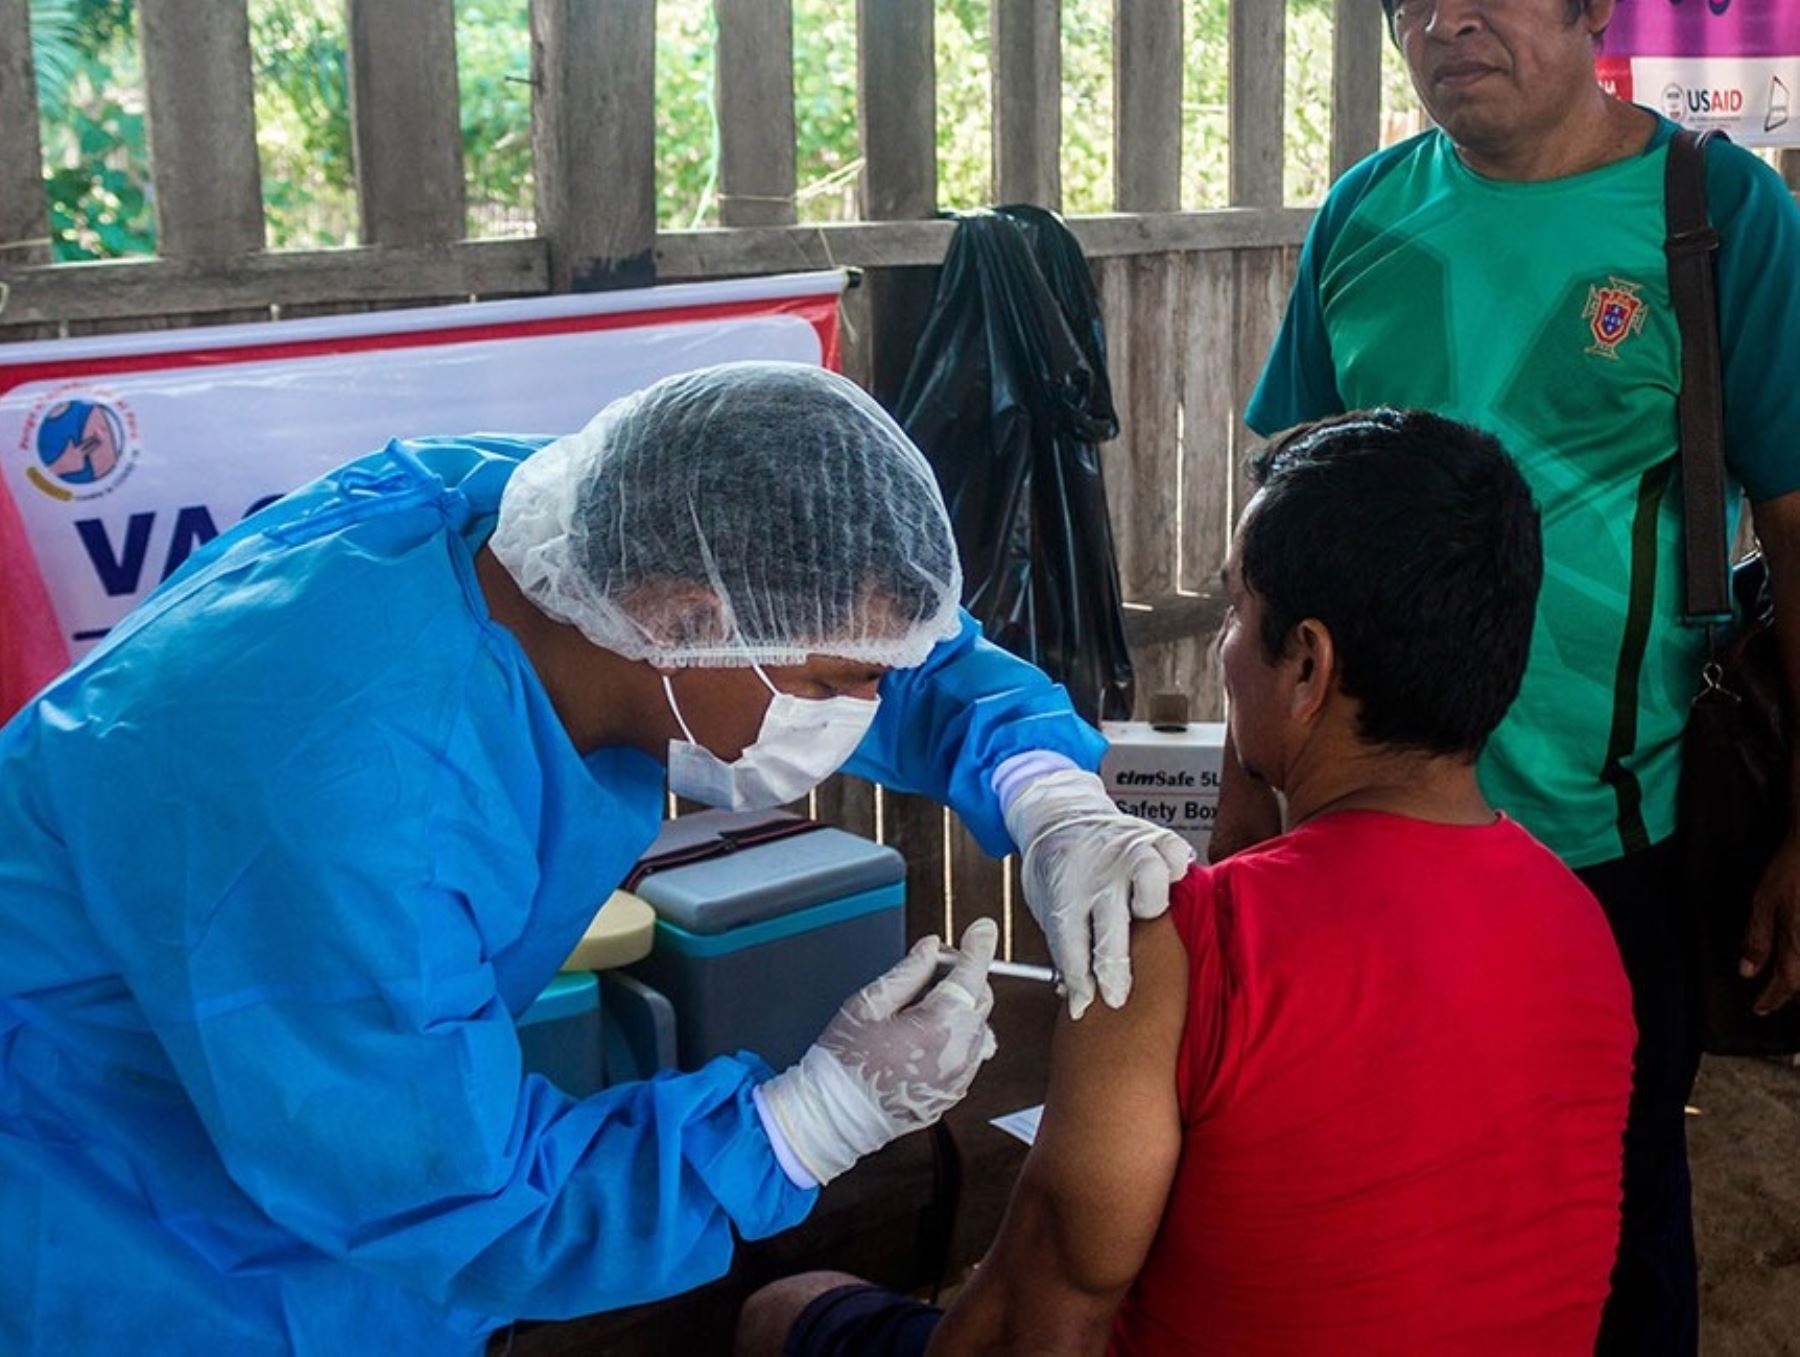 La Diresa Ucayali intensificará su campaña de vacunación contra el covid-19 para reducir la brecha y prevenir nuevos casos de esta enfermedad. Foto: Martha Zacarías